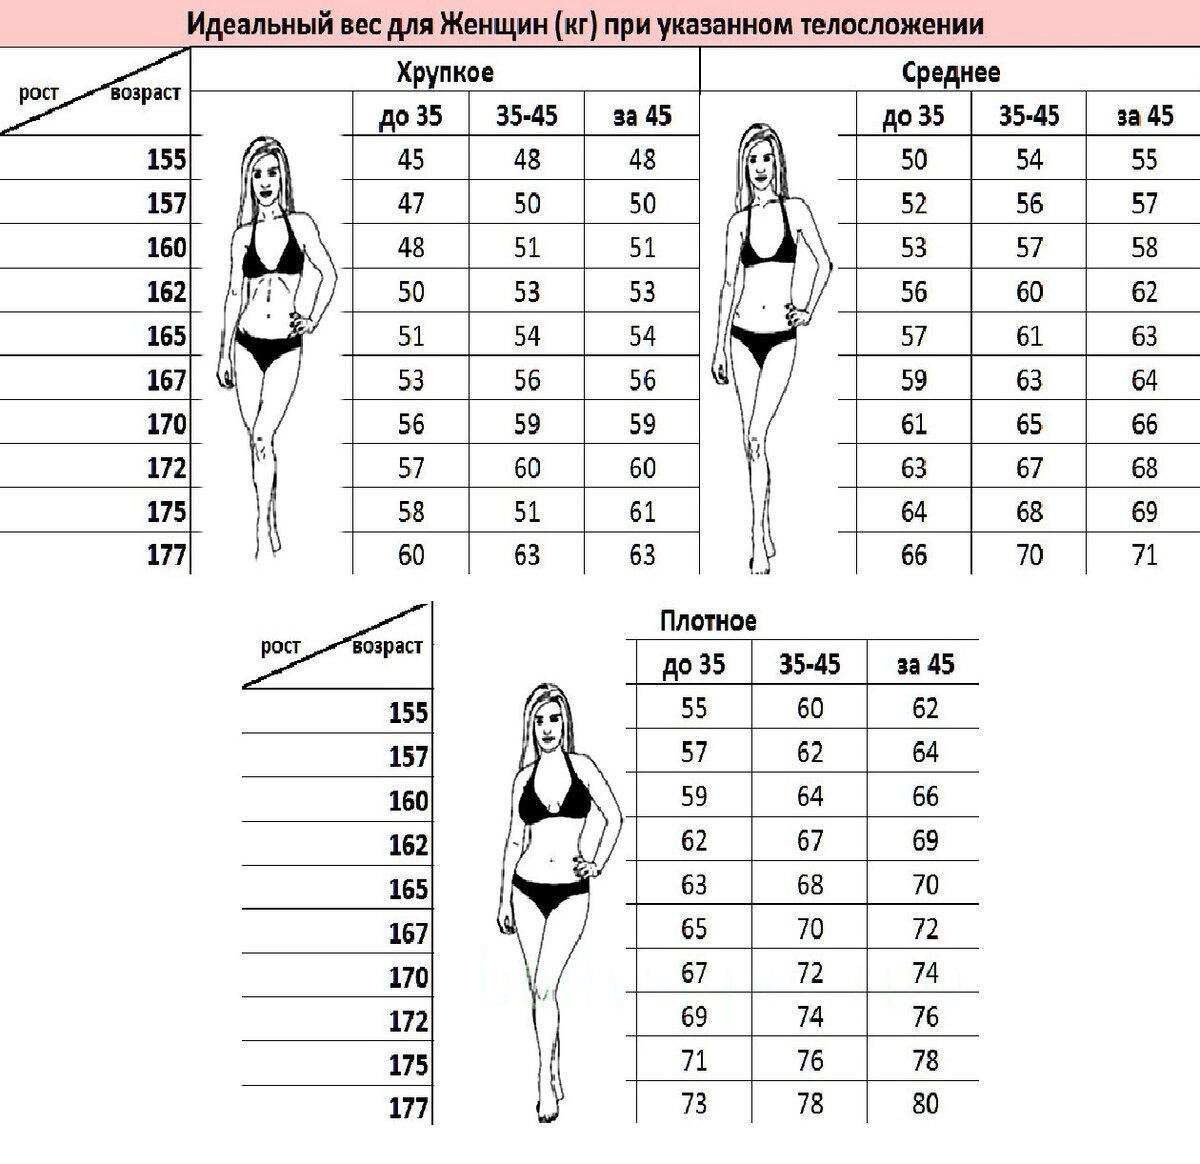 Какой вес считается нормальным. Какой рост для девушки считается идеальным. Как определить параметры девушки. Какой рост считается нормальным для женщины. 167 идеальный рост